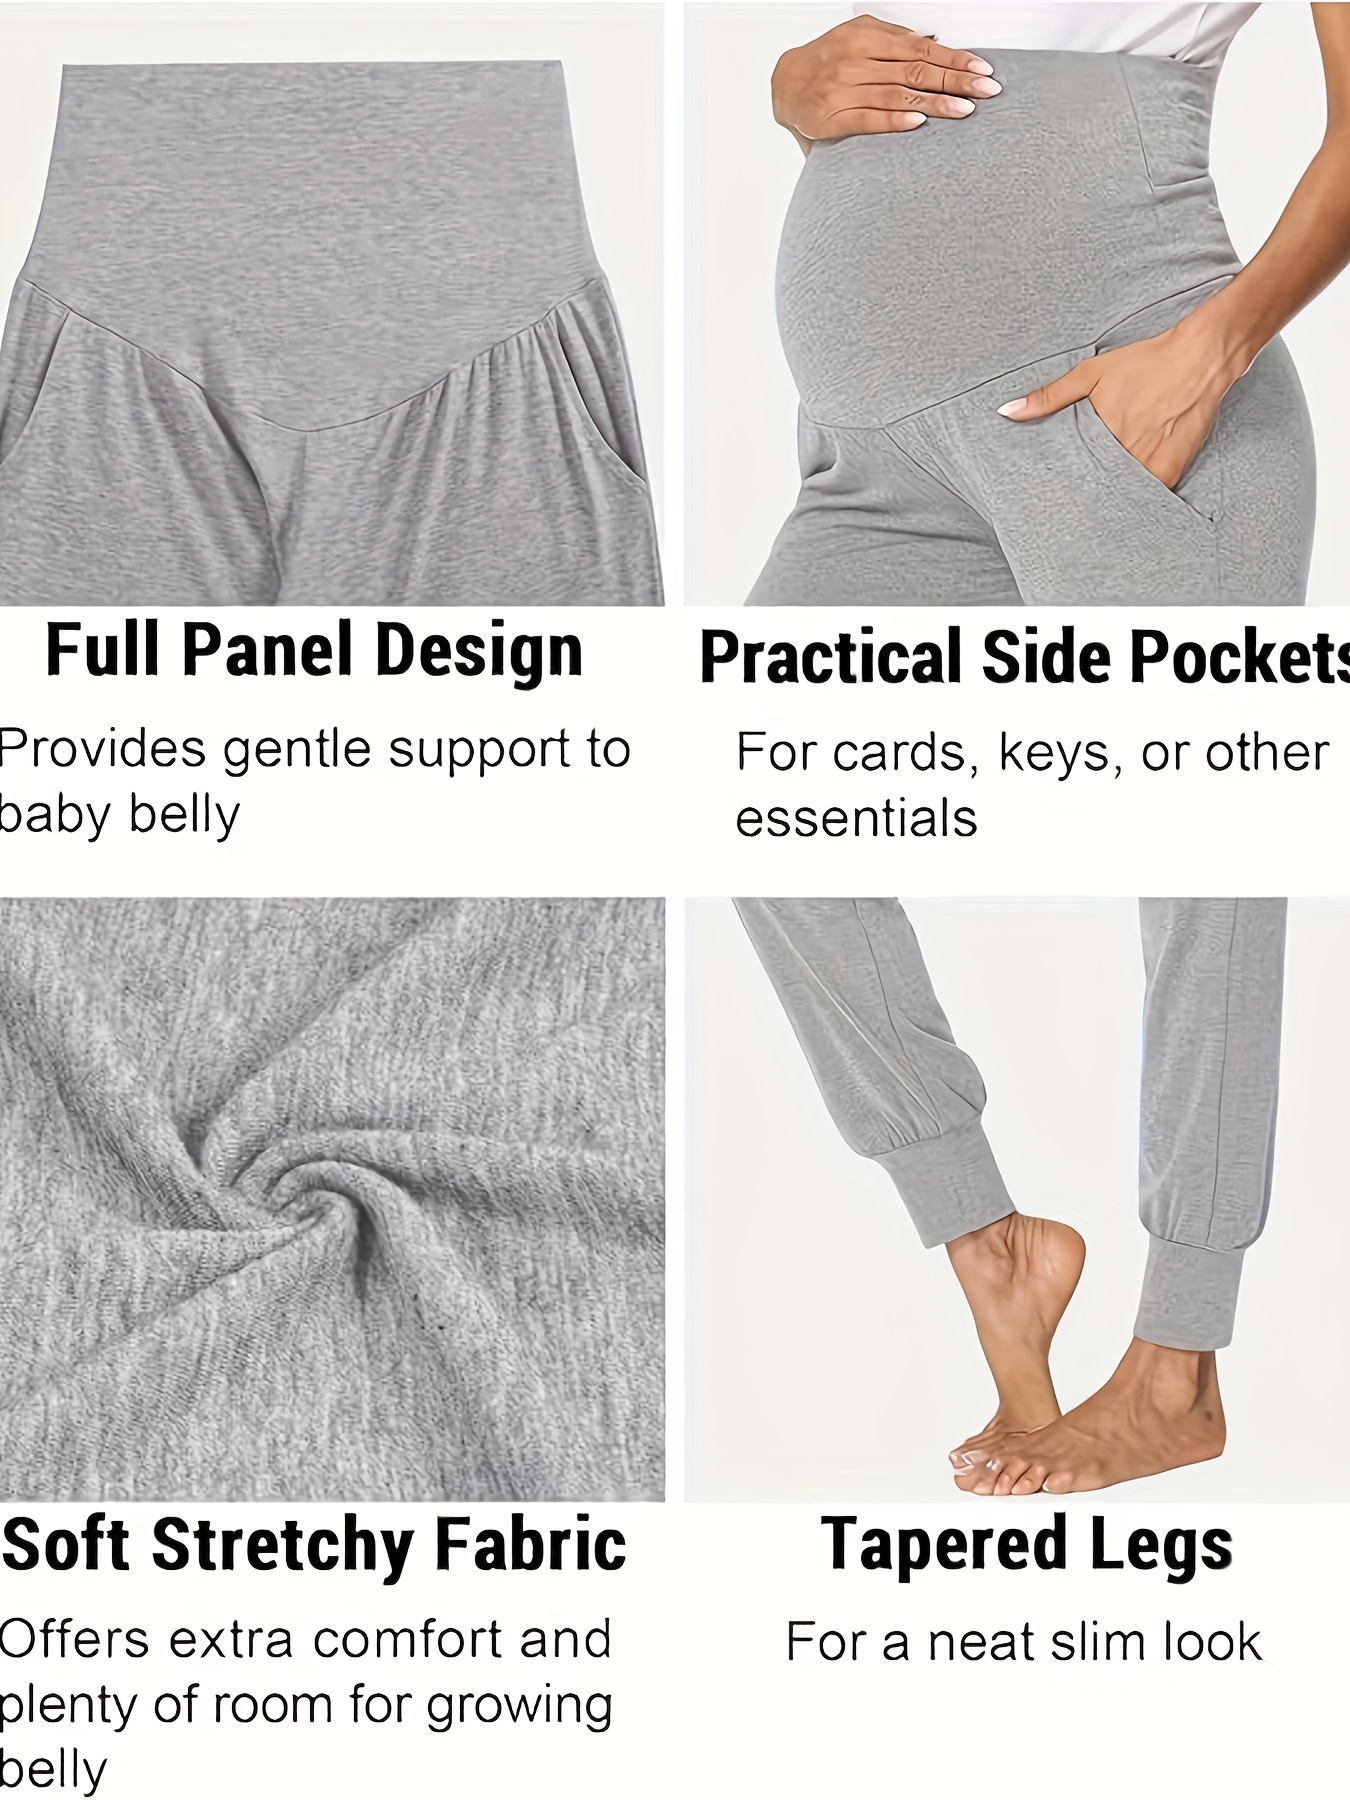 Soft maternity pants